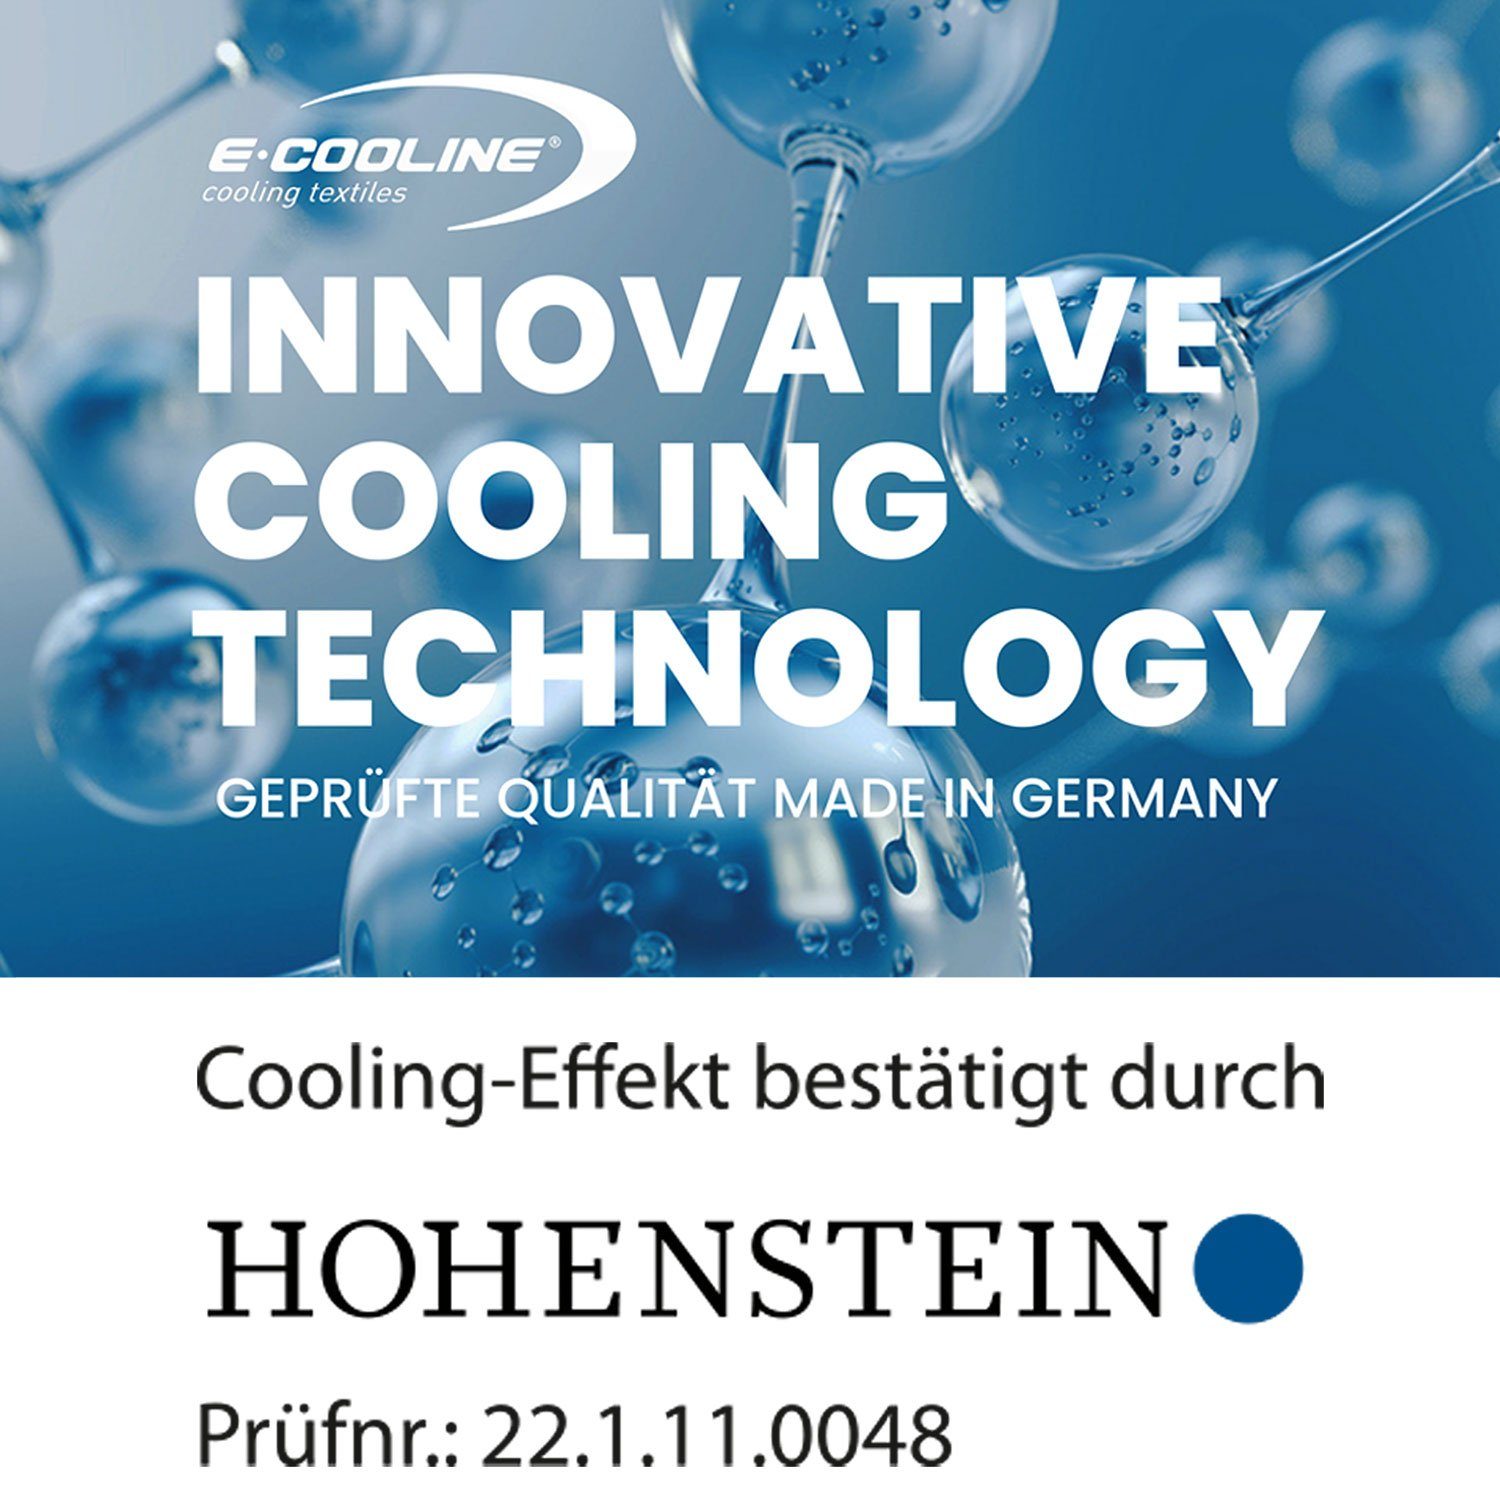 EN Kühlkleidung 20471 Aktivierung Kühlung E.COOLINE ISO Warnweste Wasser durch - Kühlweste - Signalorange mit aktiv kühlend,